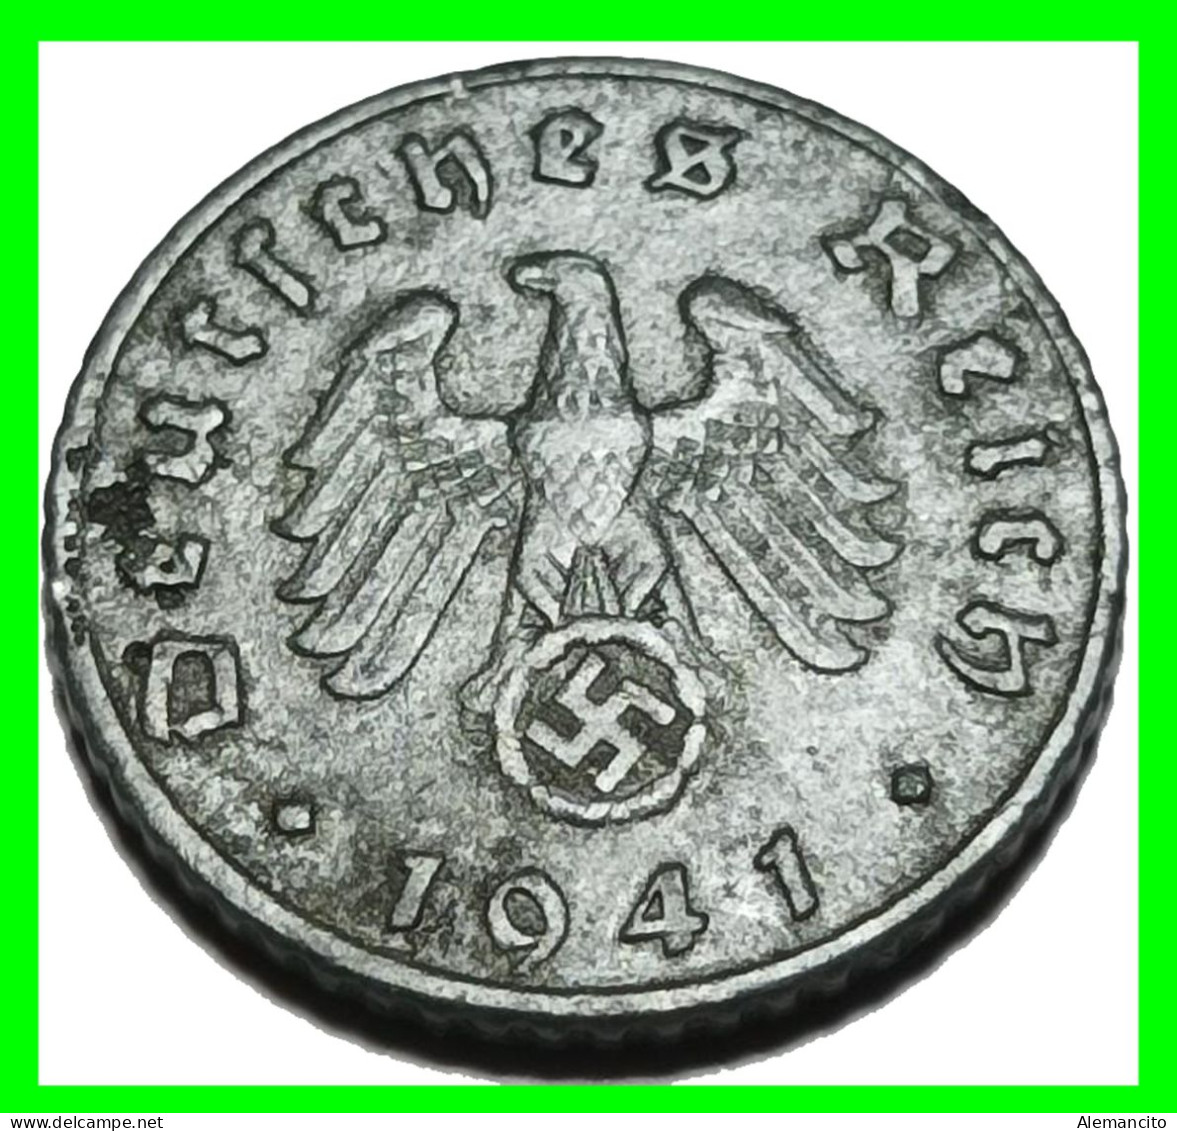 ALEMANIA - GERMANY SERIE DE 7 MONEDAS DE 5 REICHSPFNNIG TERCER REICHS ( AÑO 1941 CECAS - A - B -D - E - F - G - J ) - 5 Reichspfennig